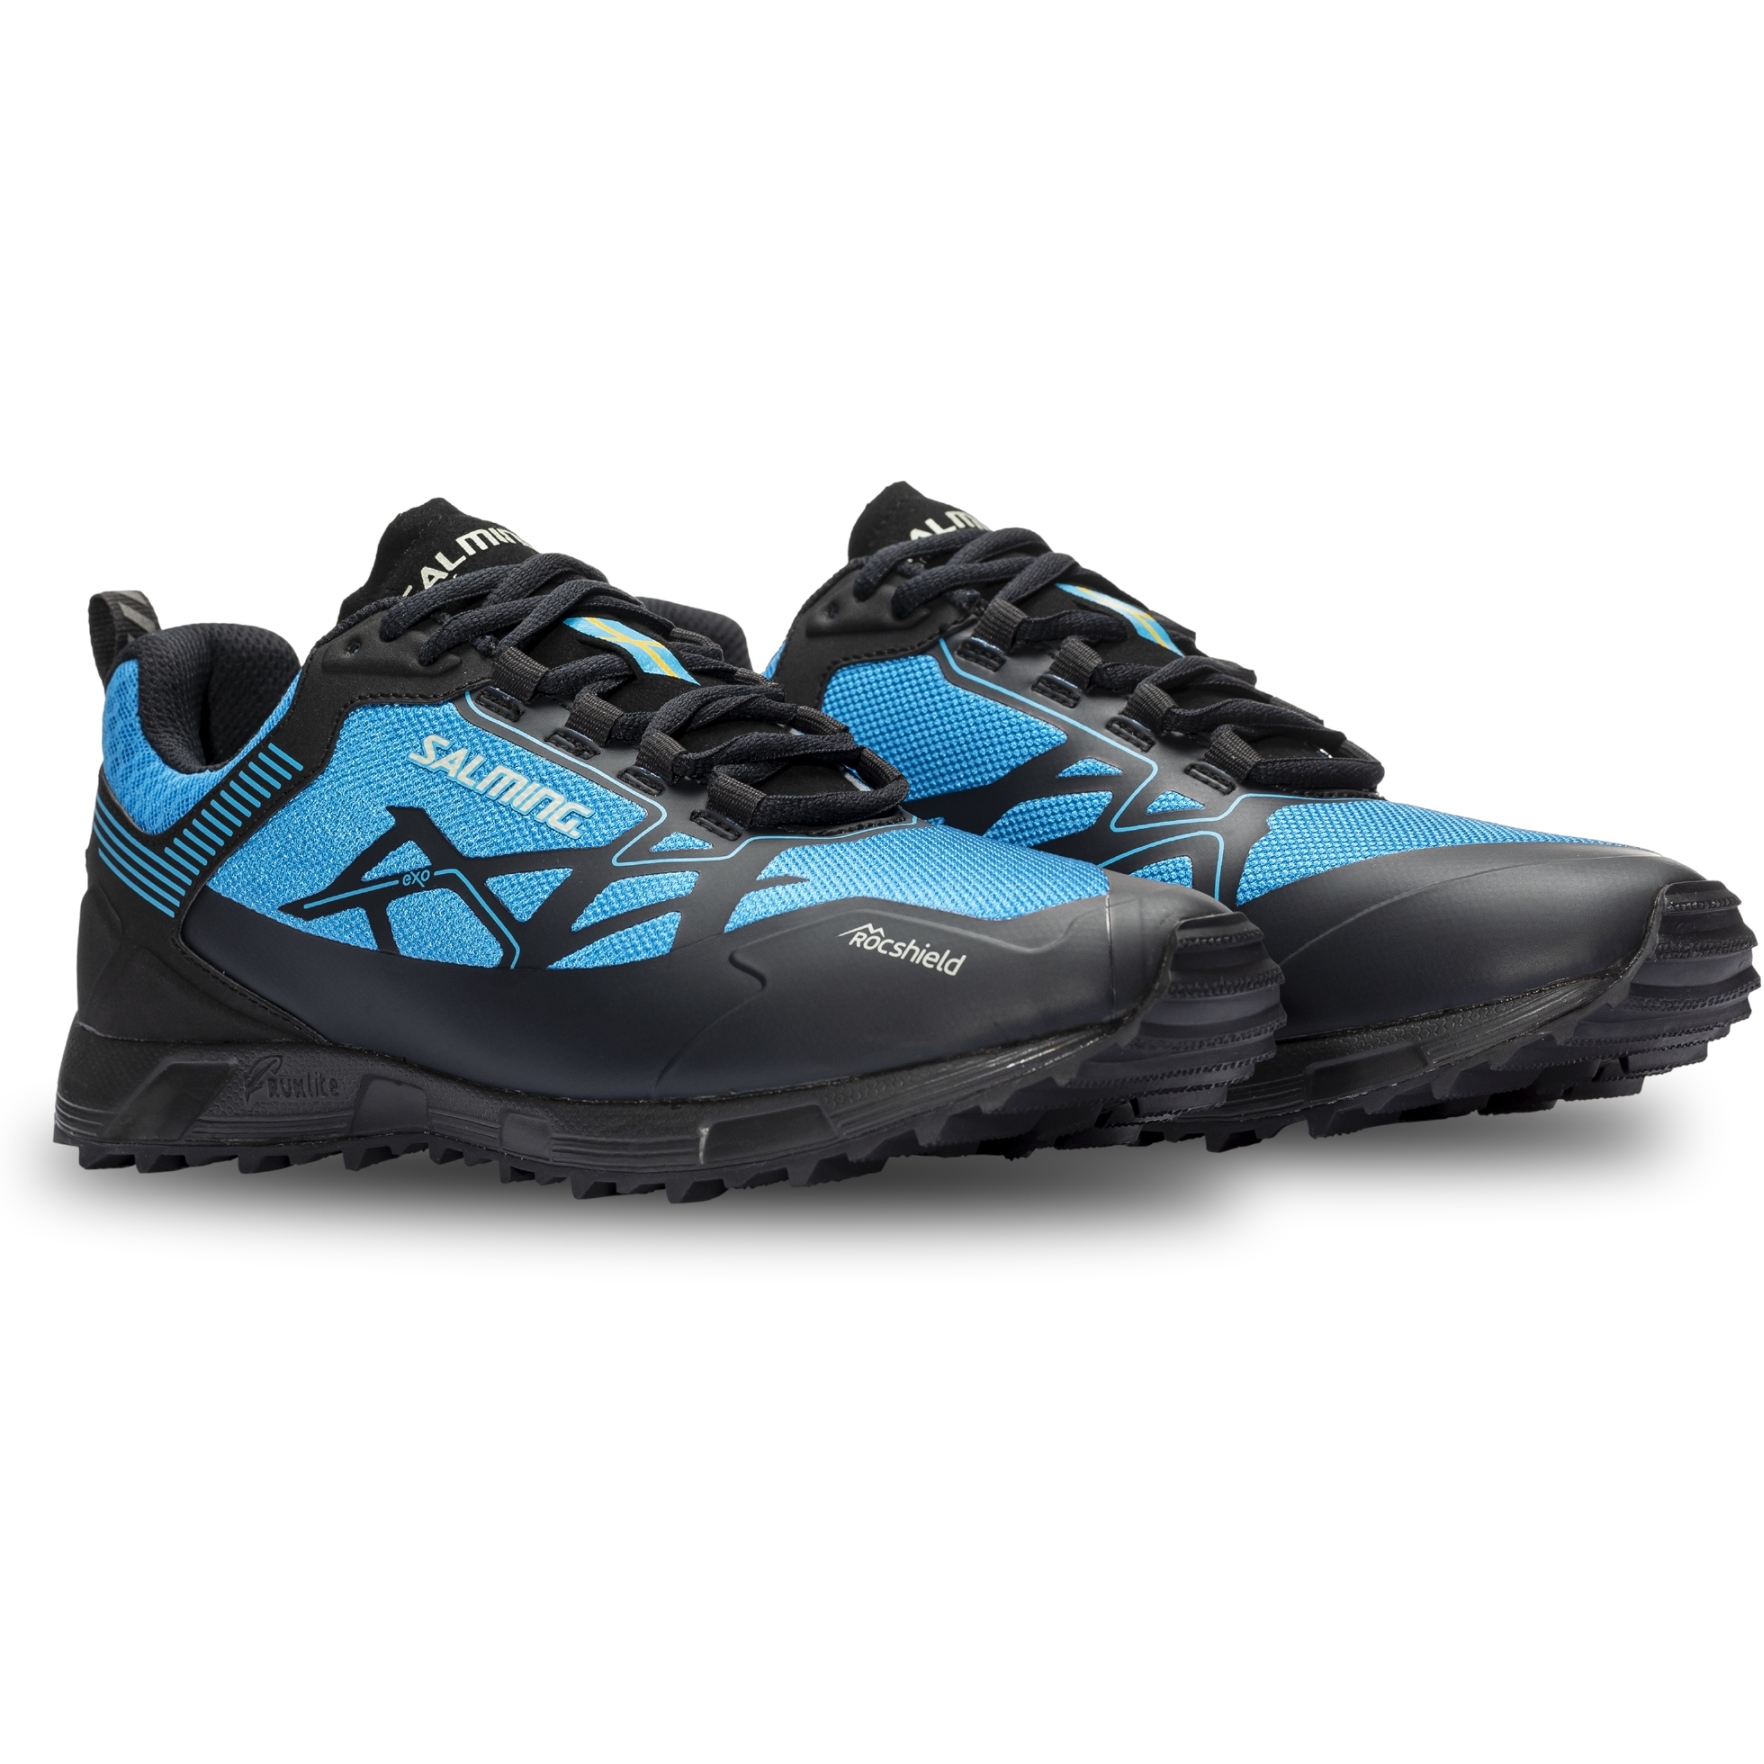 Bild von Salming Ranger Damen Trail Running Schuhe - dark grey/spring blue